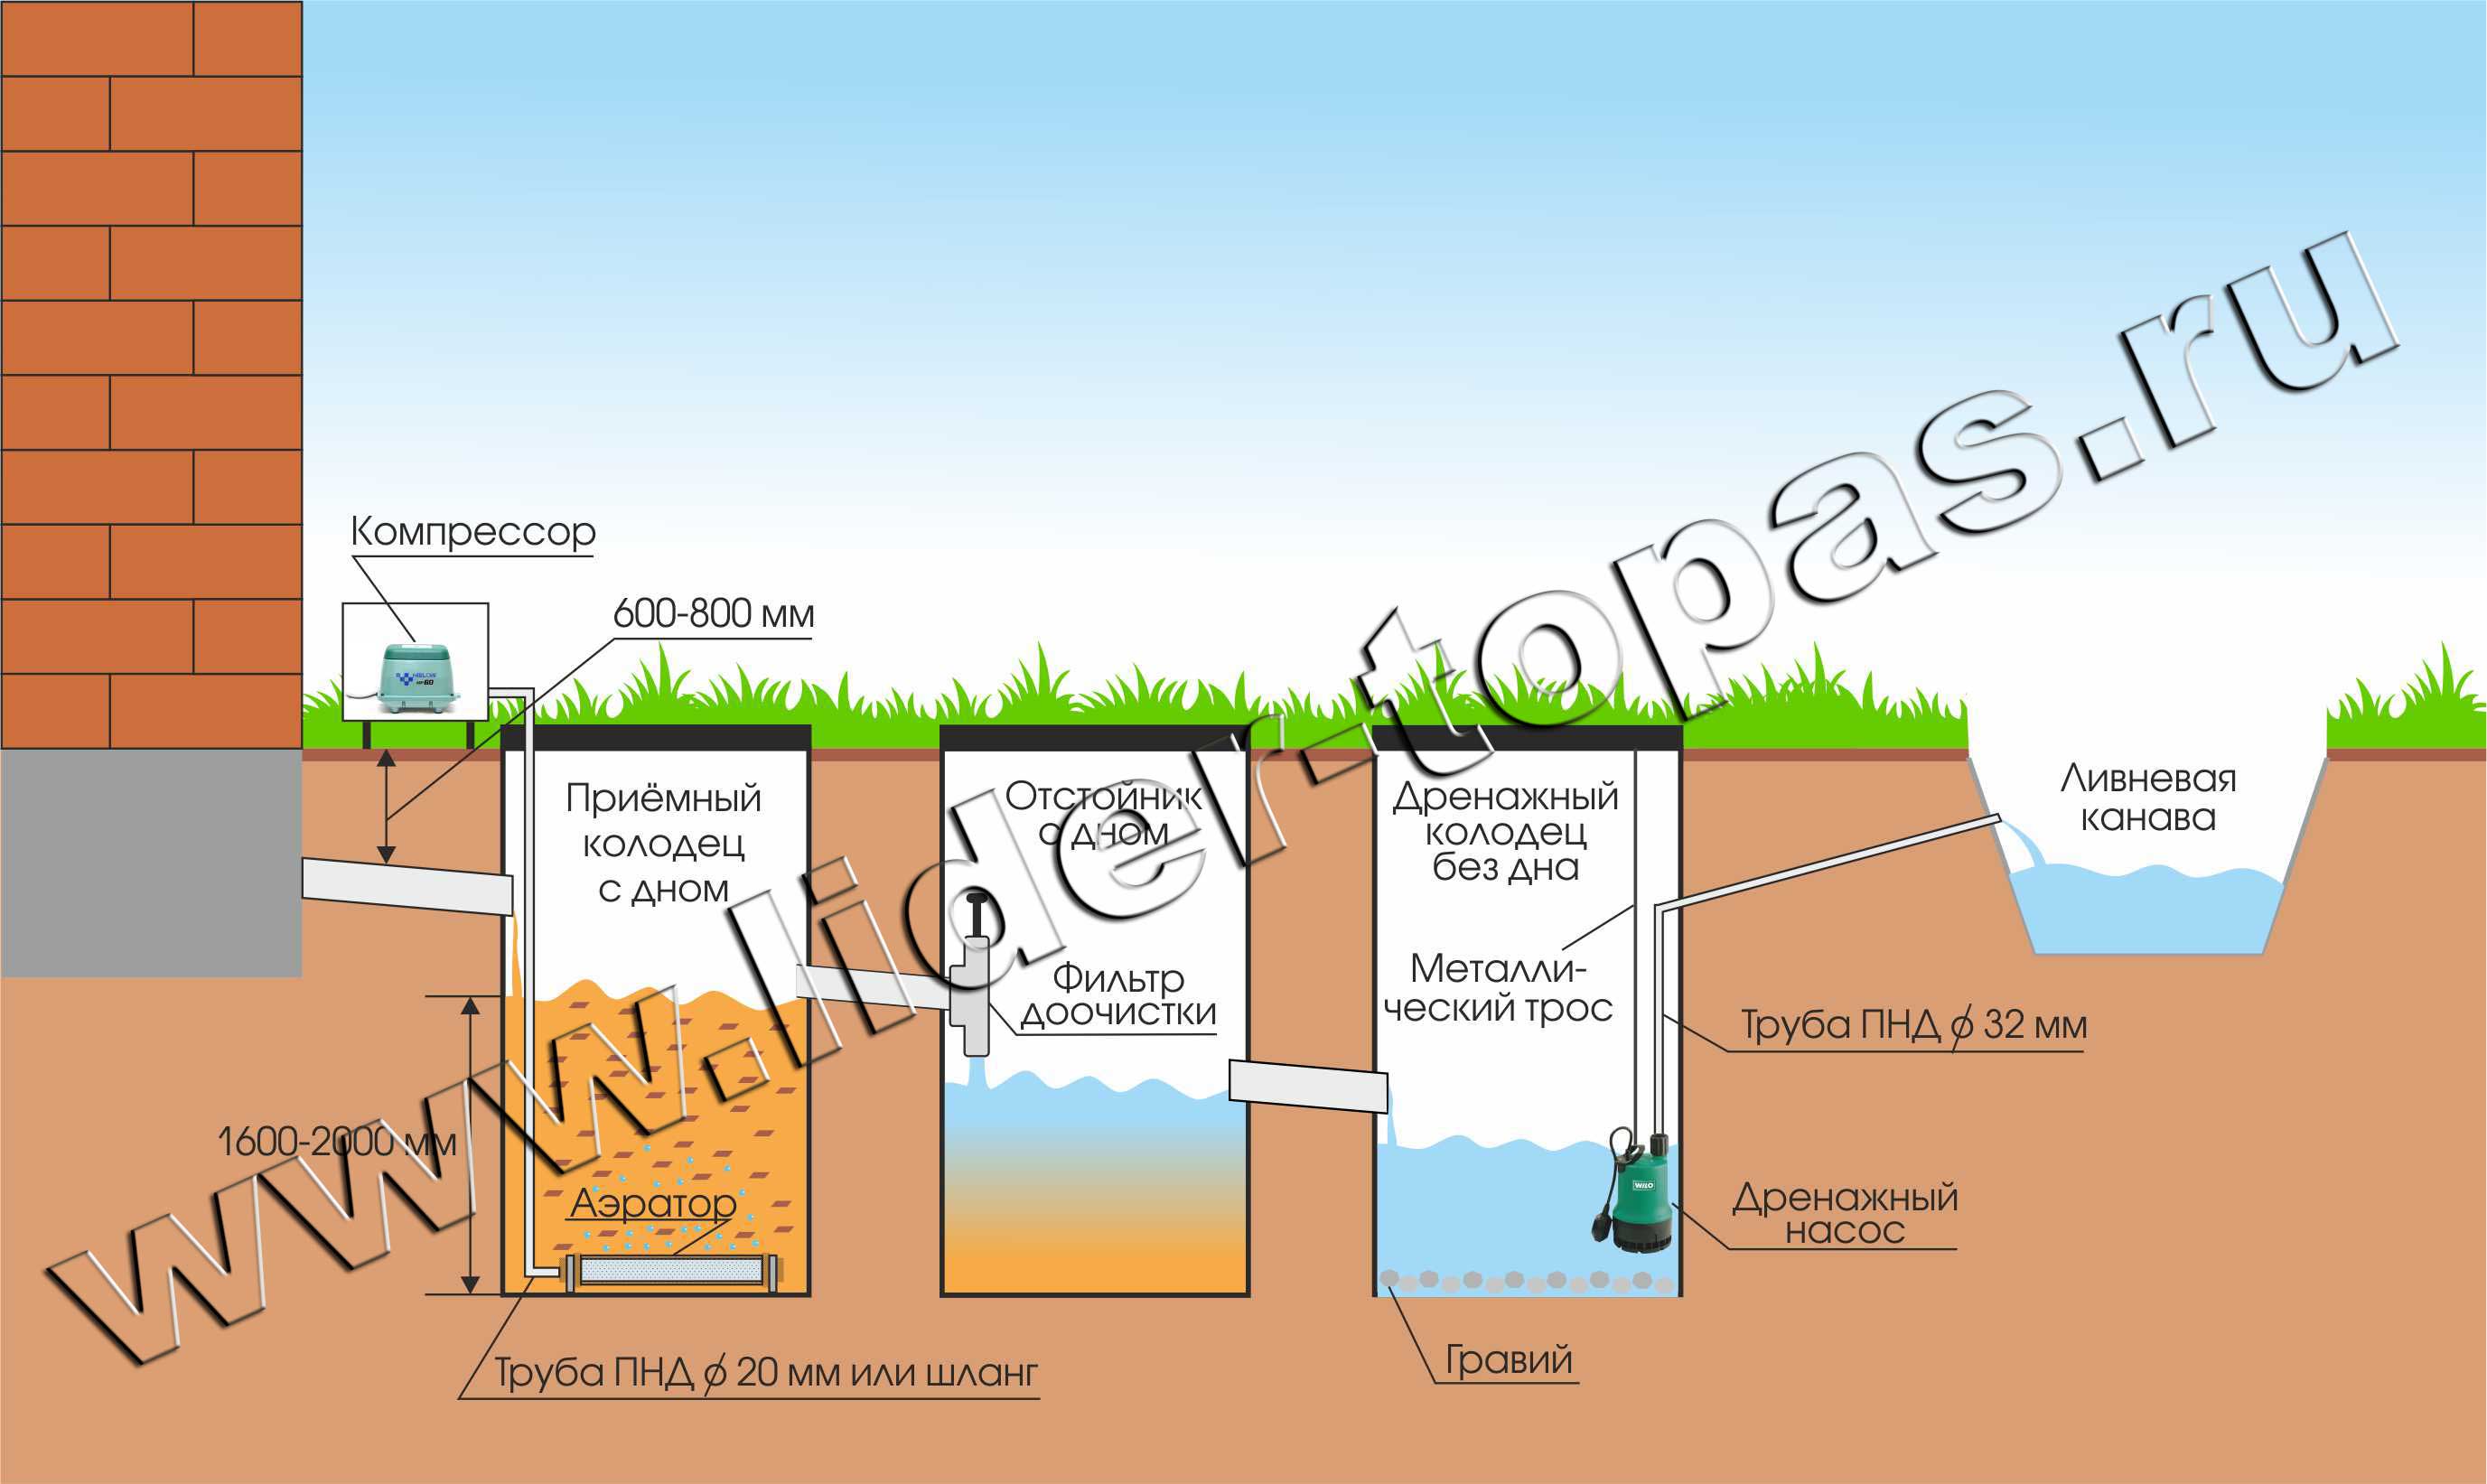 Схема аэрации бетонного септика